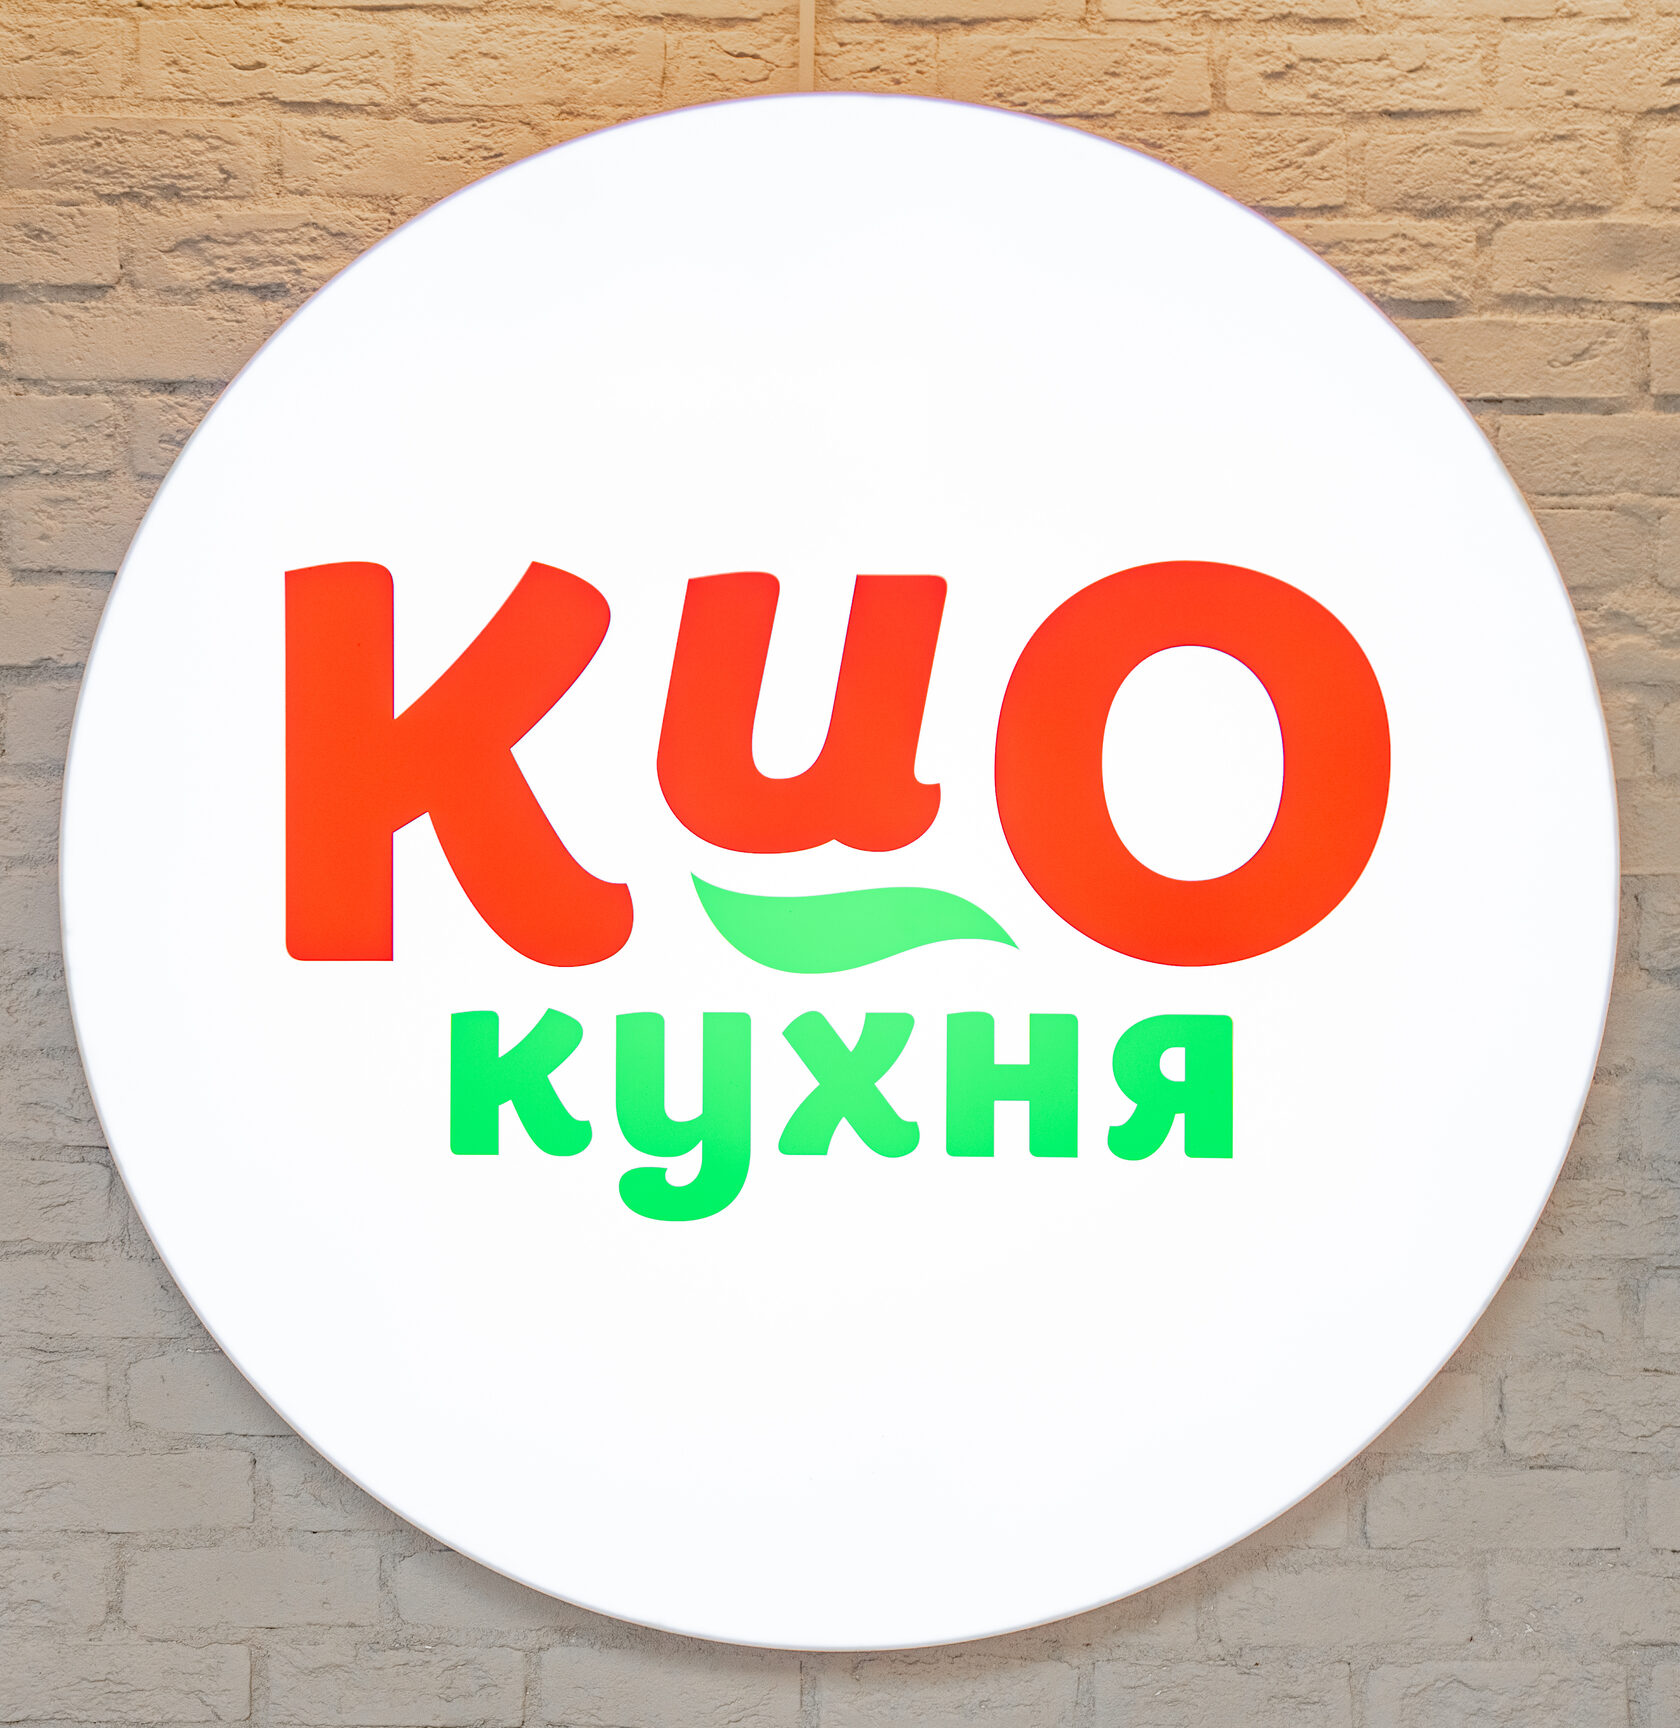 Кио кухня спб. Кио кухня ассортимент. Кио кухня реклама. Кио кухня приложение СПБ.